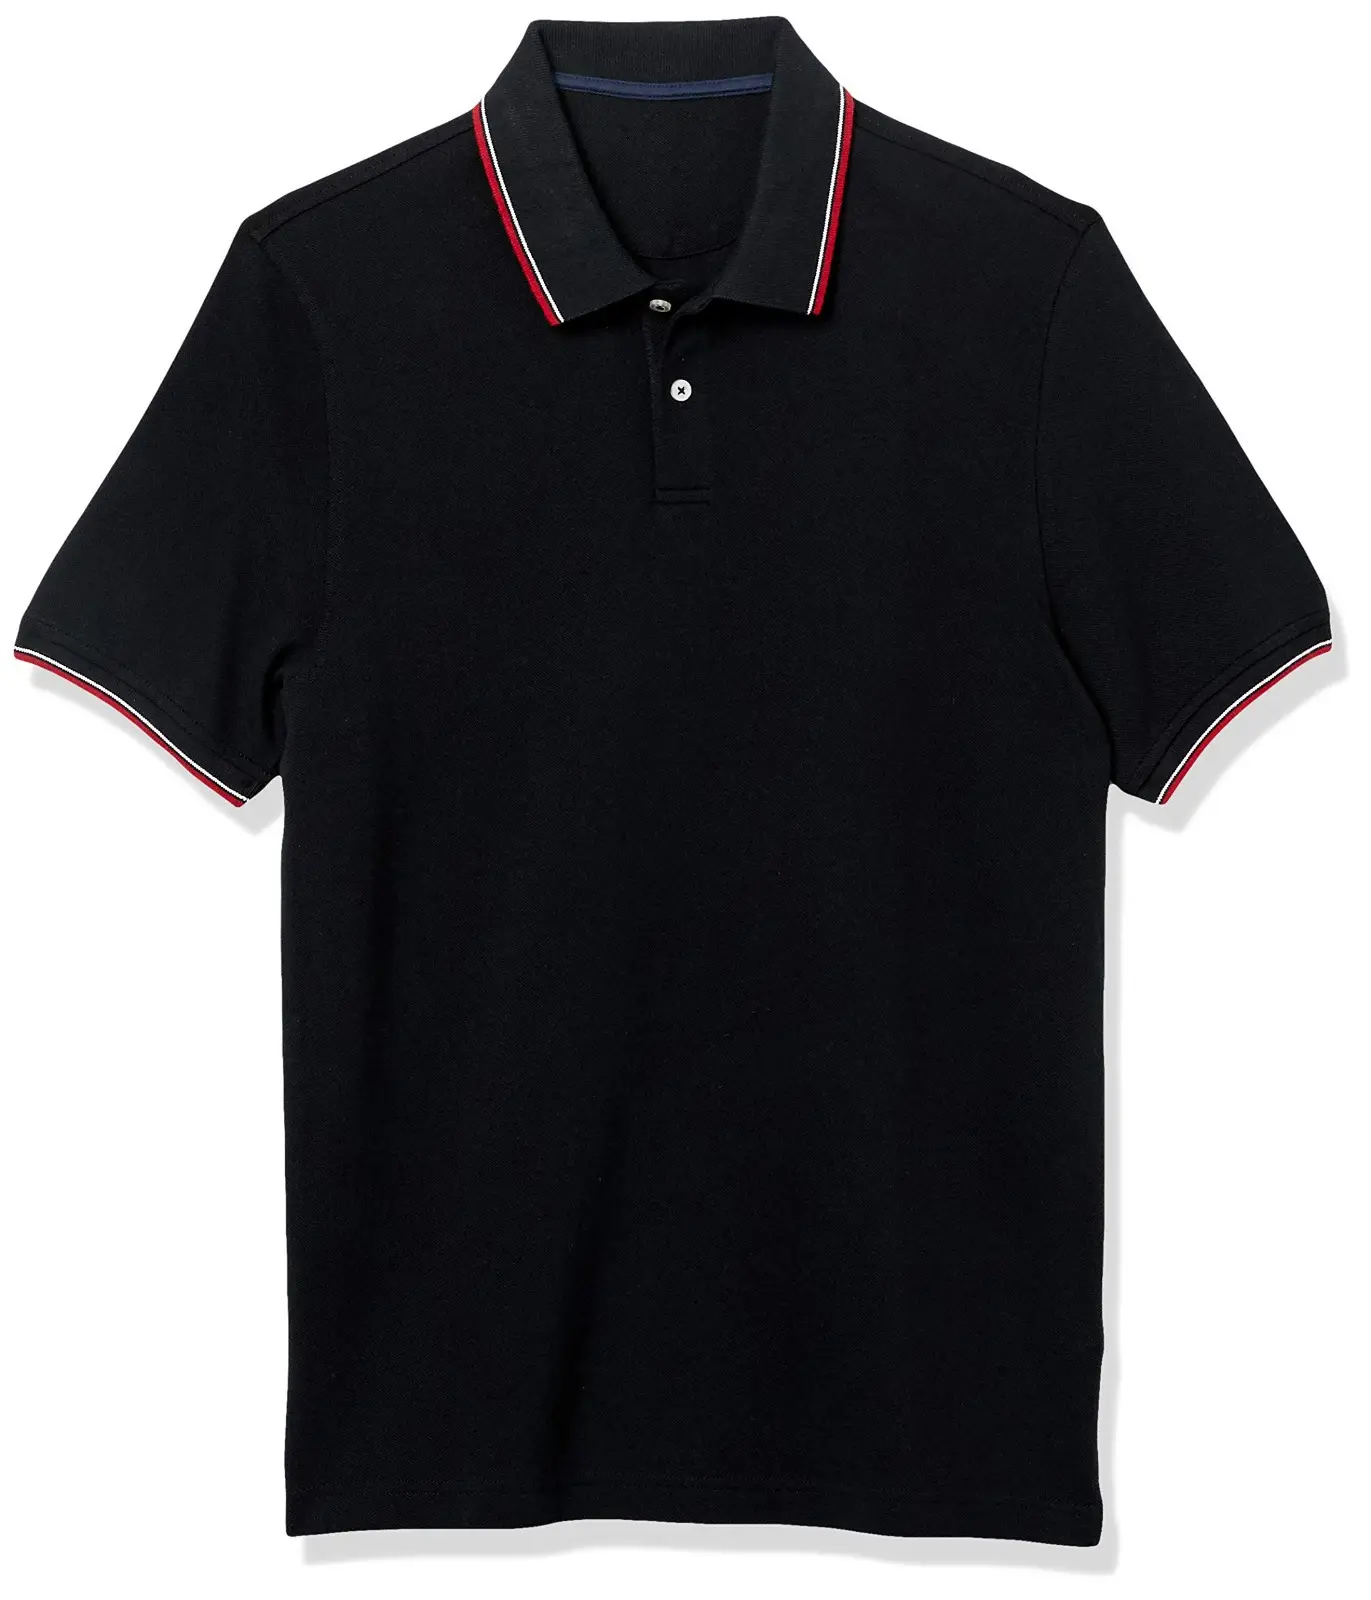 Últimas Hot Sale Custom Made OEM Serviço de Alta Qualidade Camisas de Algodão New Design homens Golf Polo Camisas Para Homens